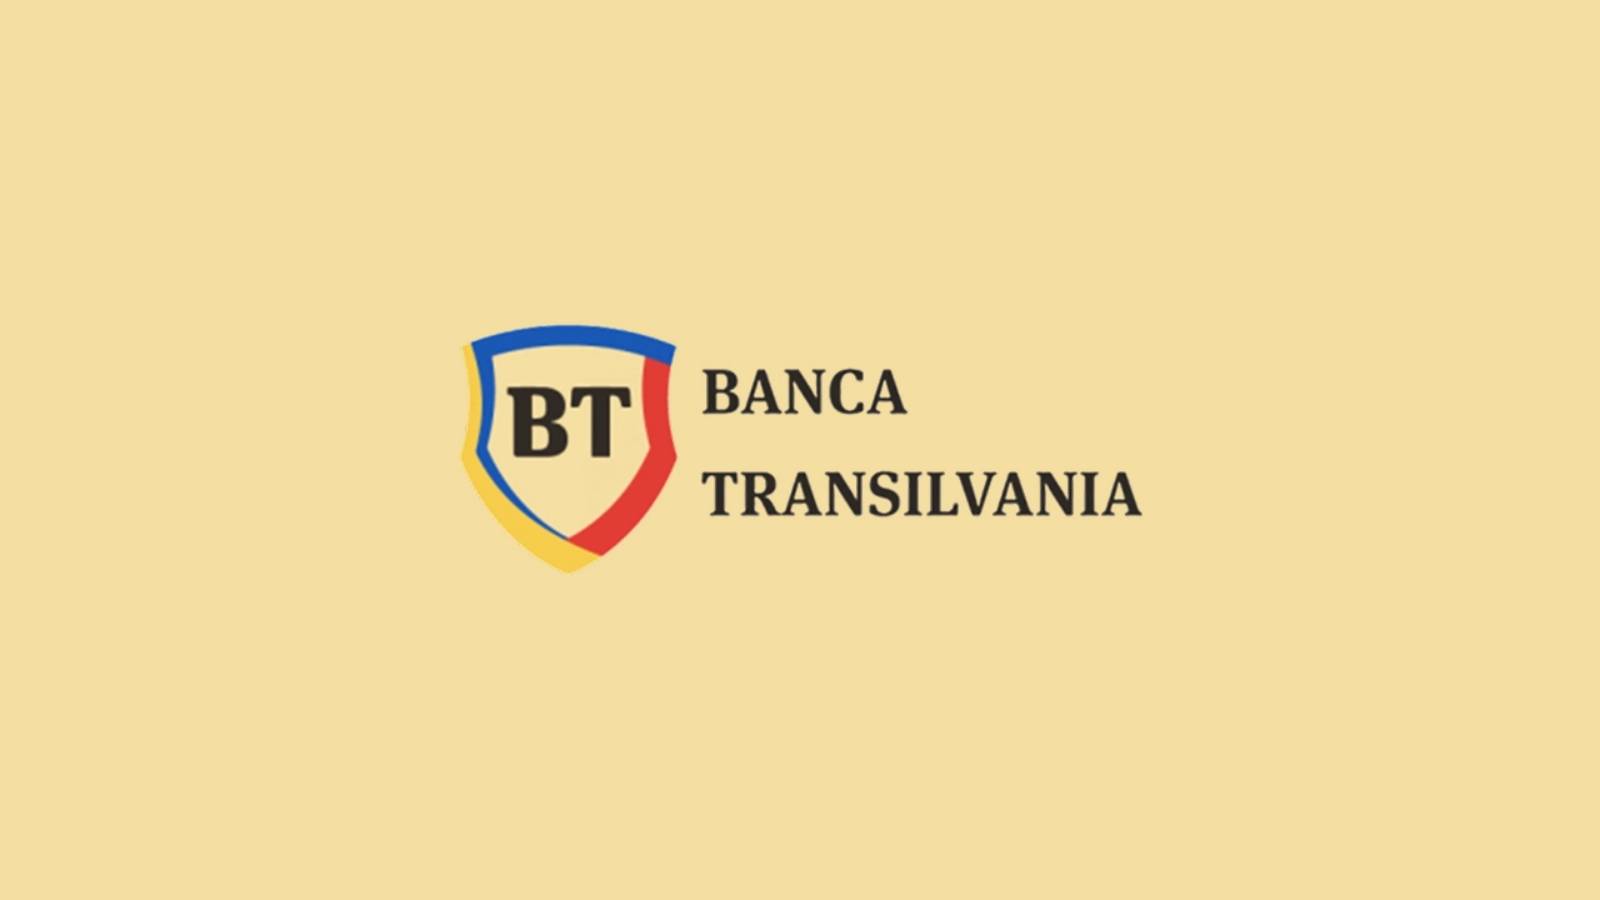 BANCA Transilvania officiella ändringar SISTA MINUTEN Omedelbar OBS Rumänska kunder